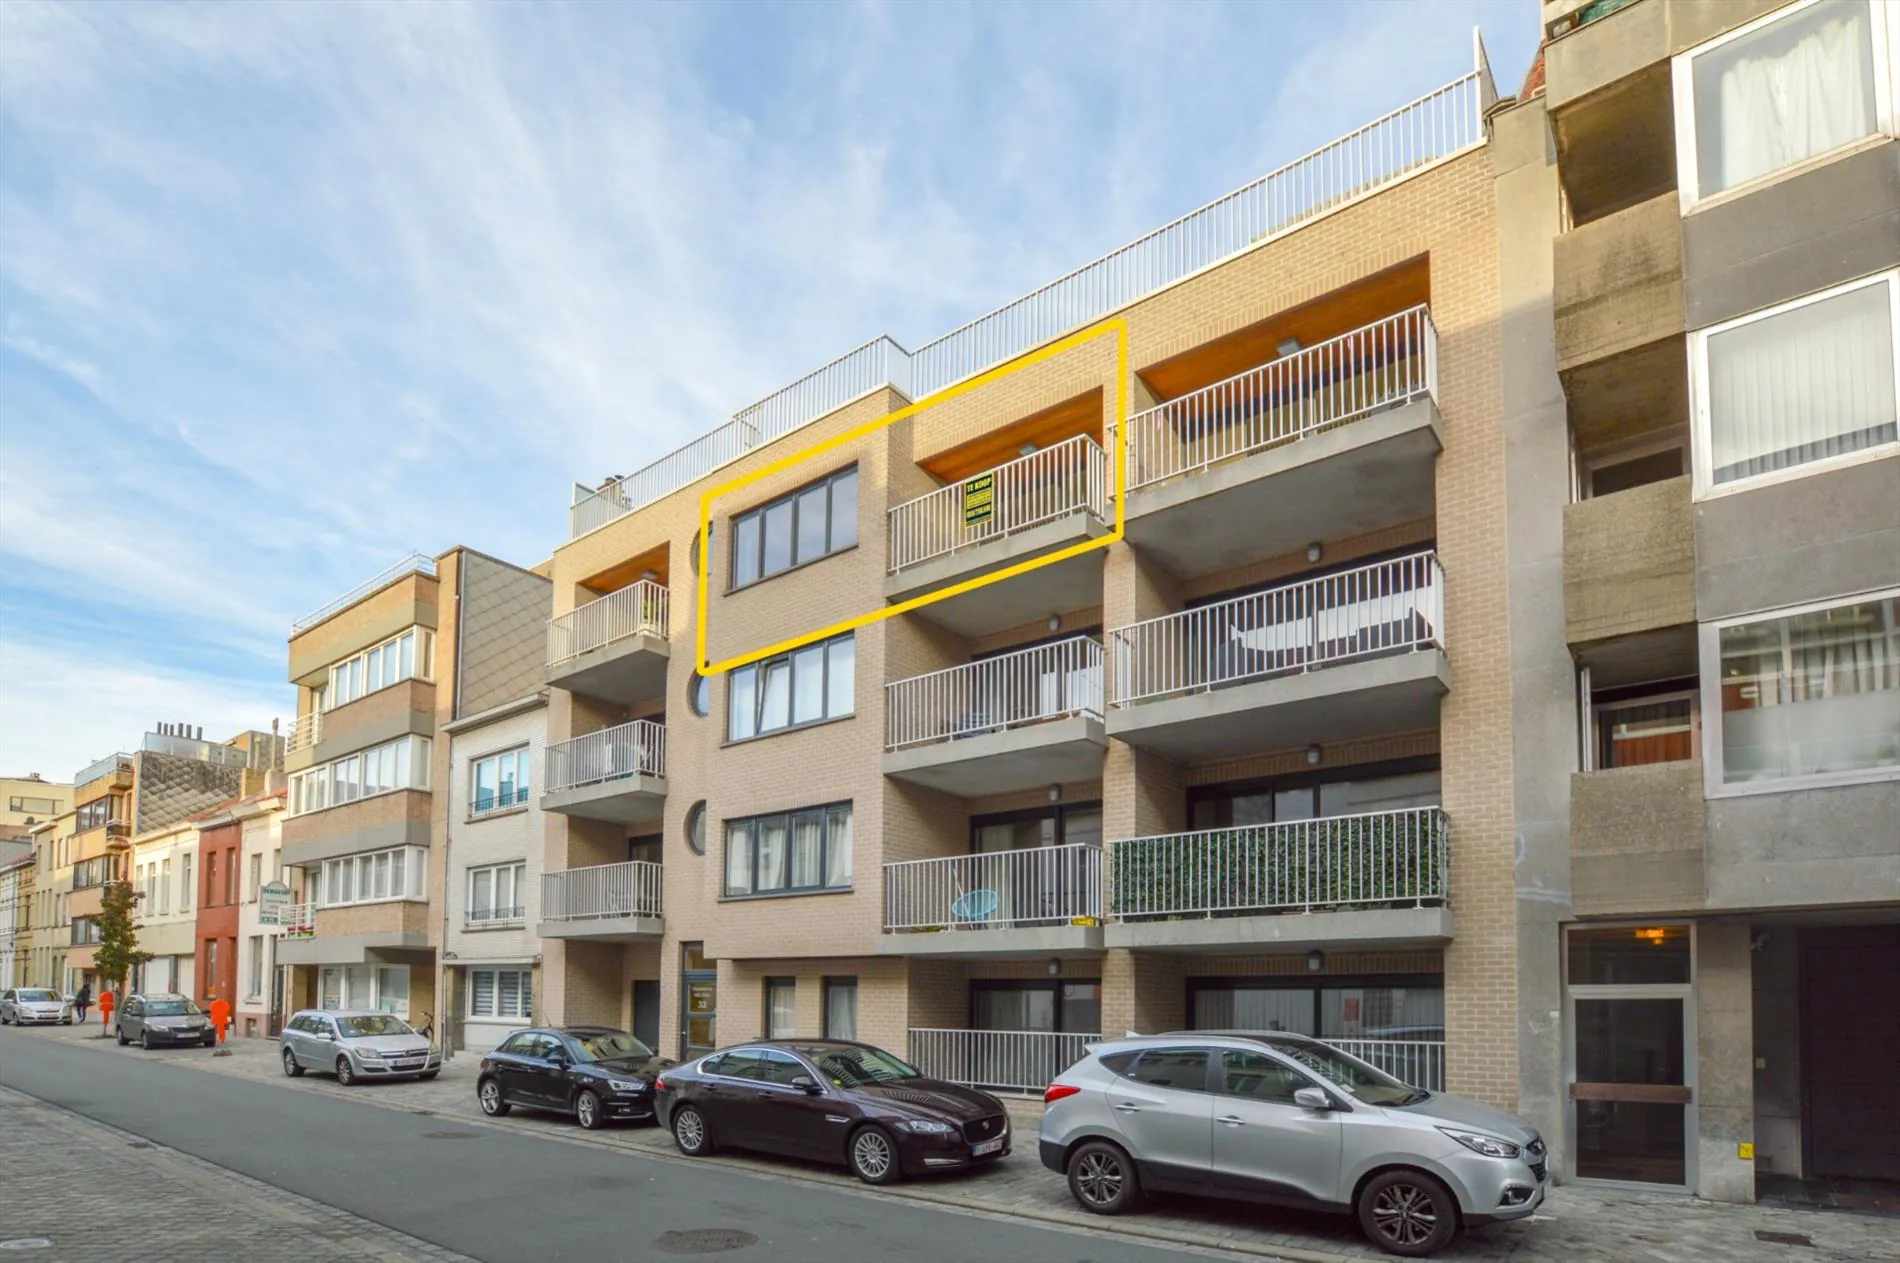 Recent instapklaar appartement met garage met zonneterras in centrum Oostende